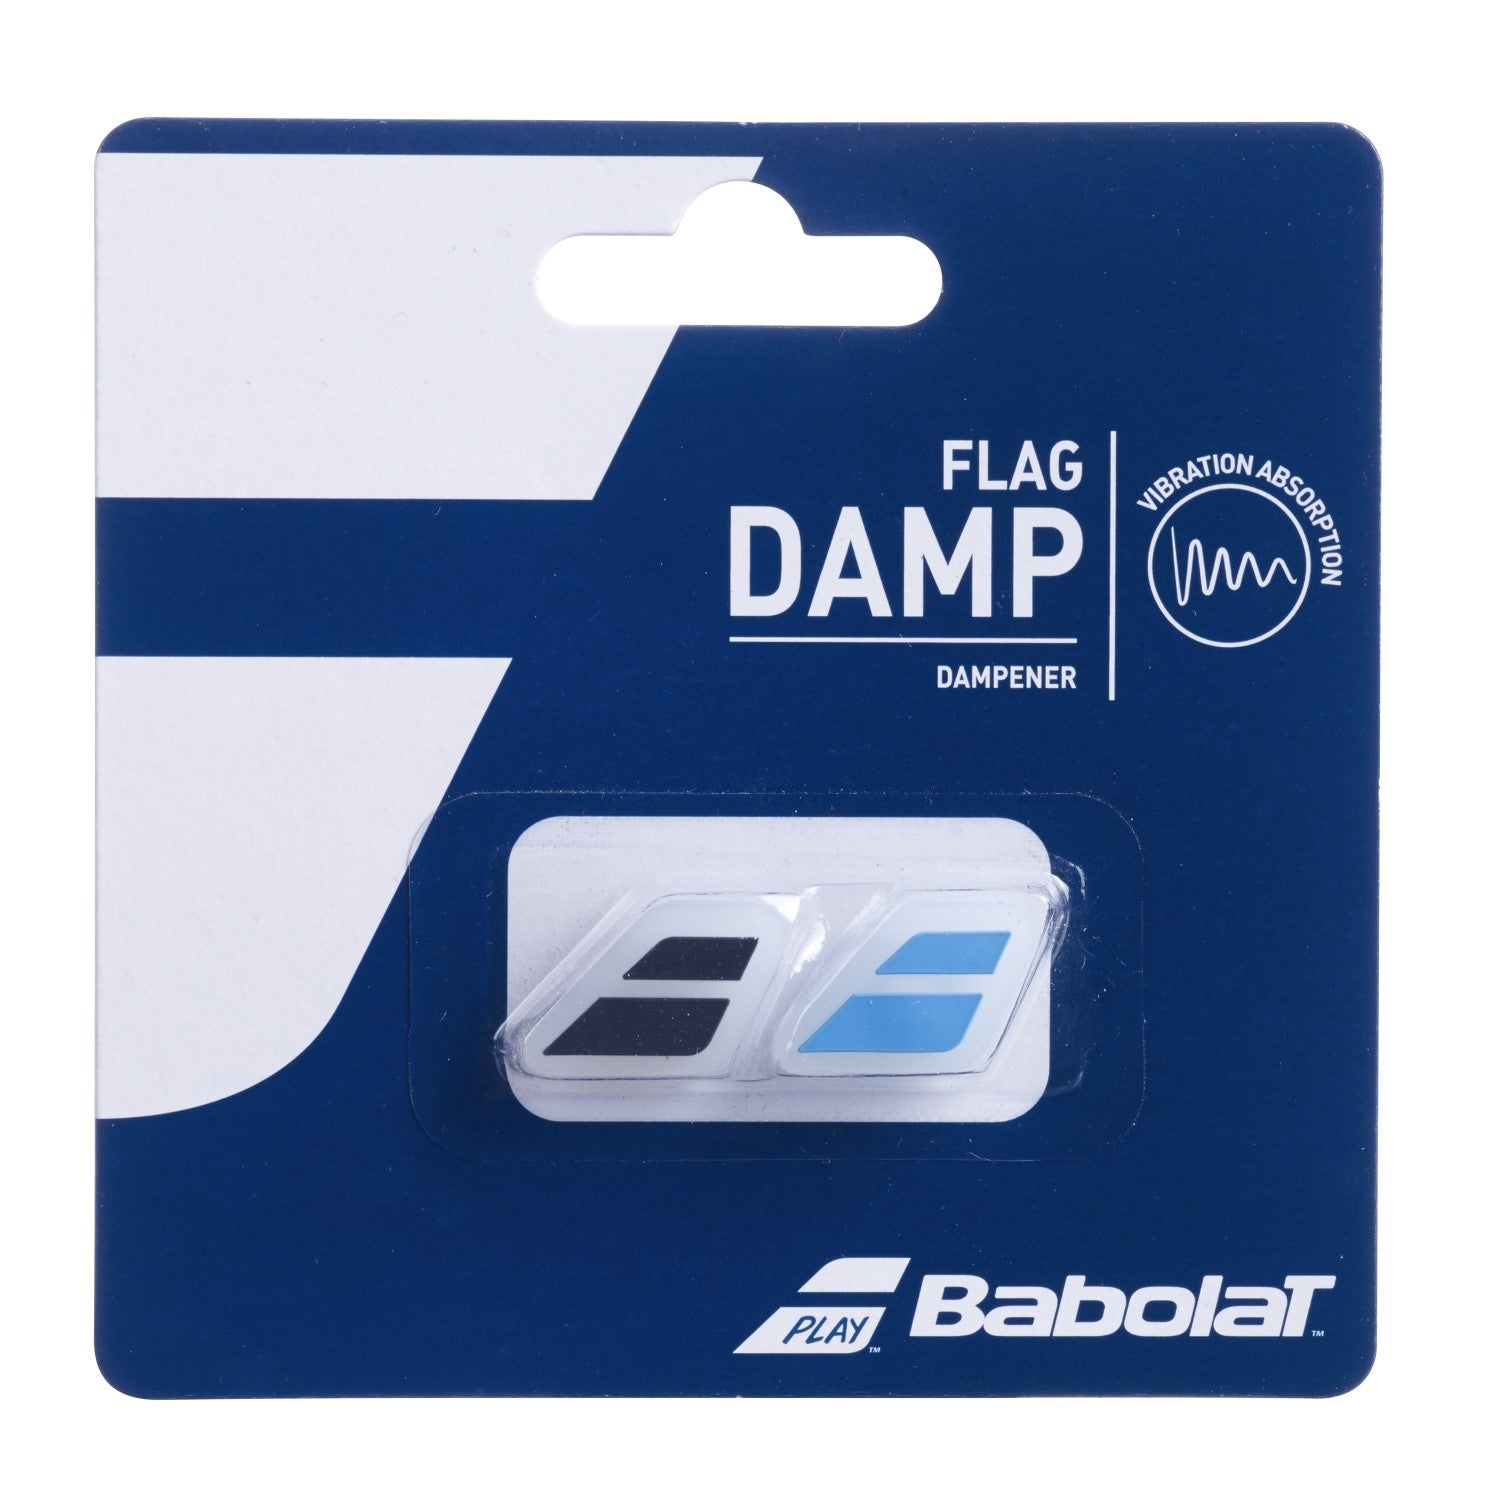 Babolat Flag Vibration Dampener 2-Pack